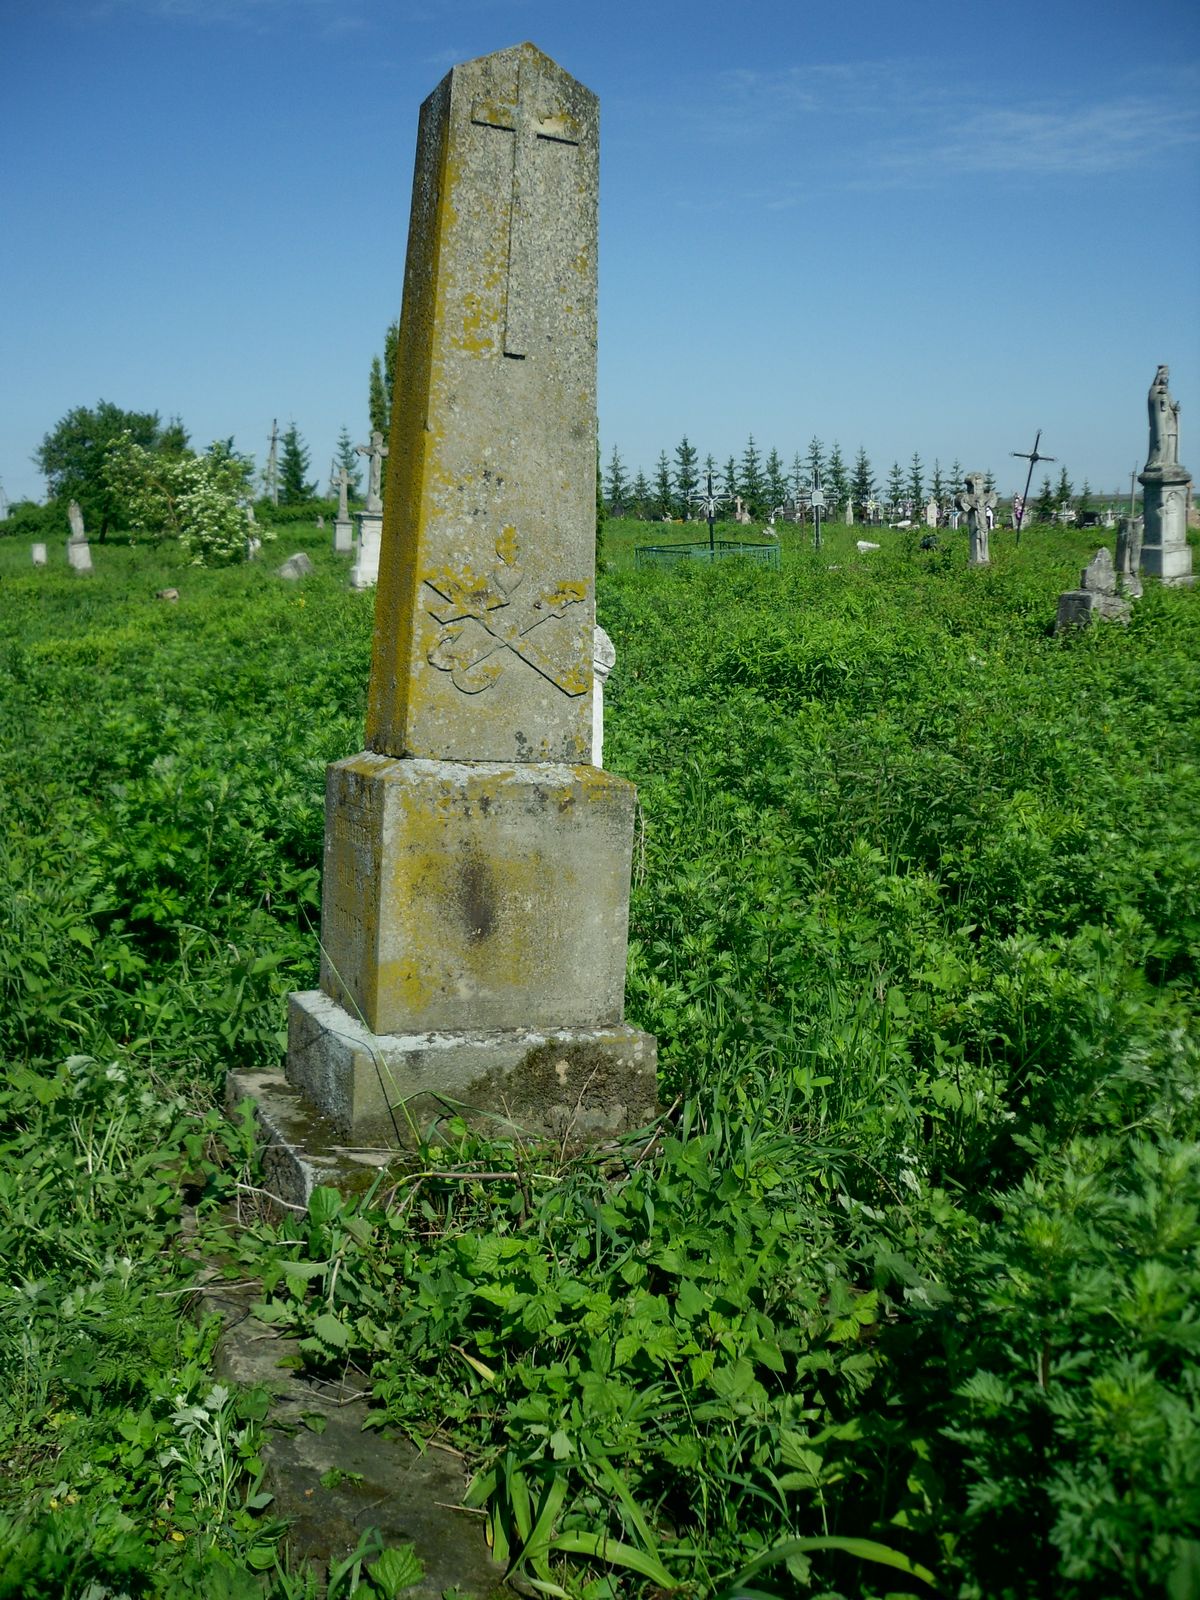 The gravestone of Ksenia Bodnar. Cemetery in Cebrów